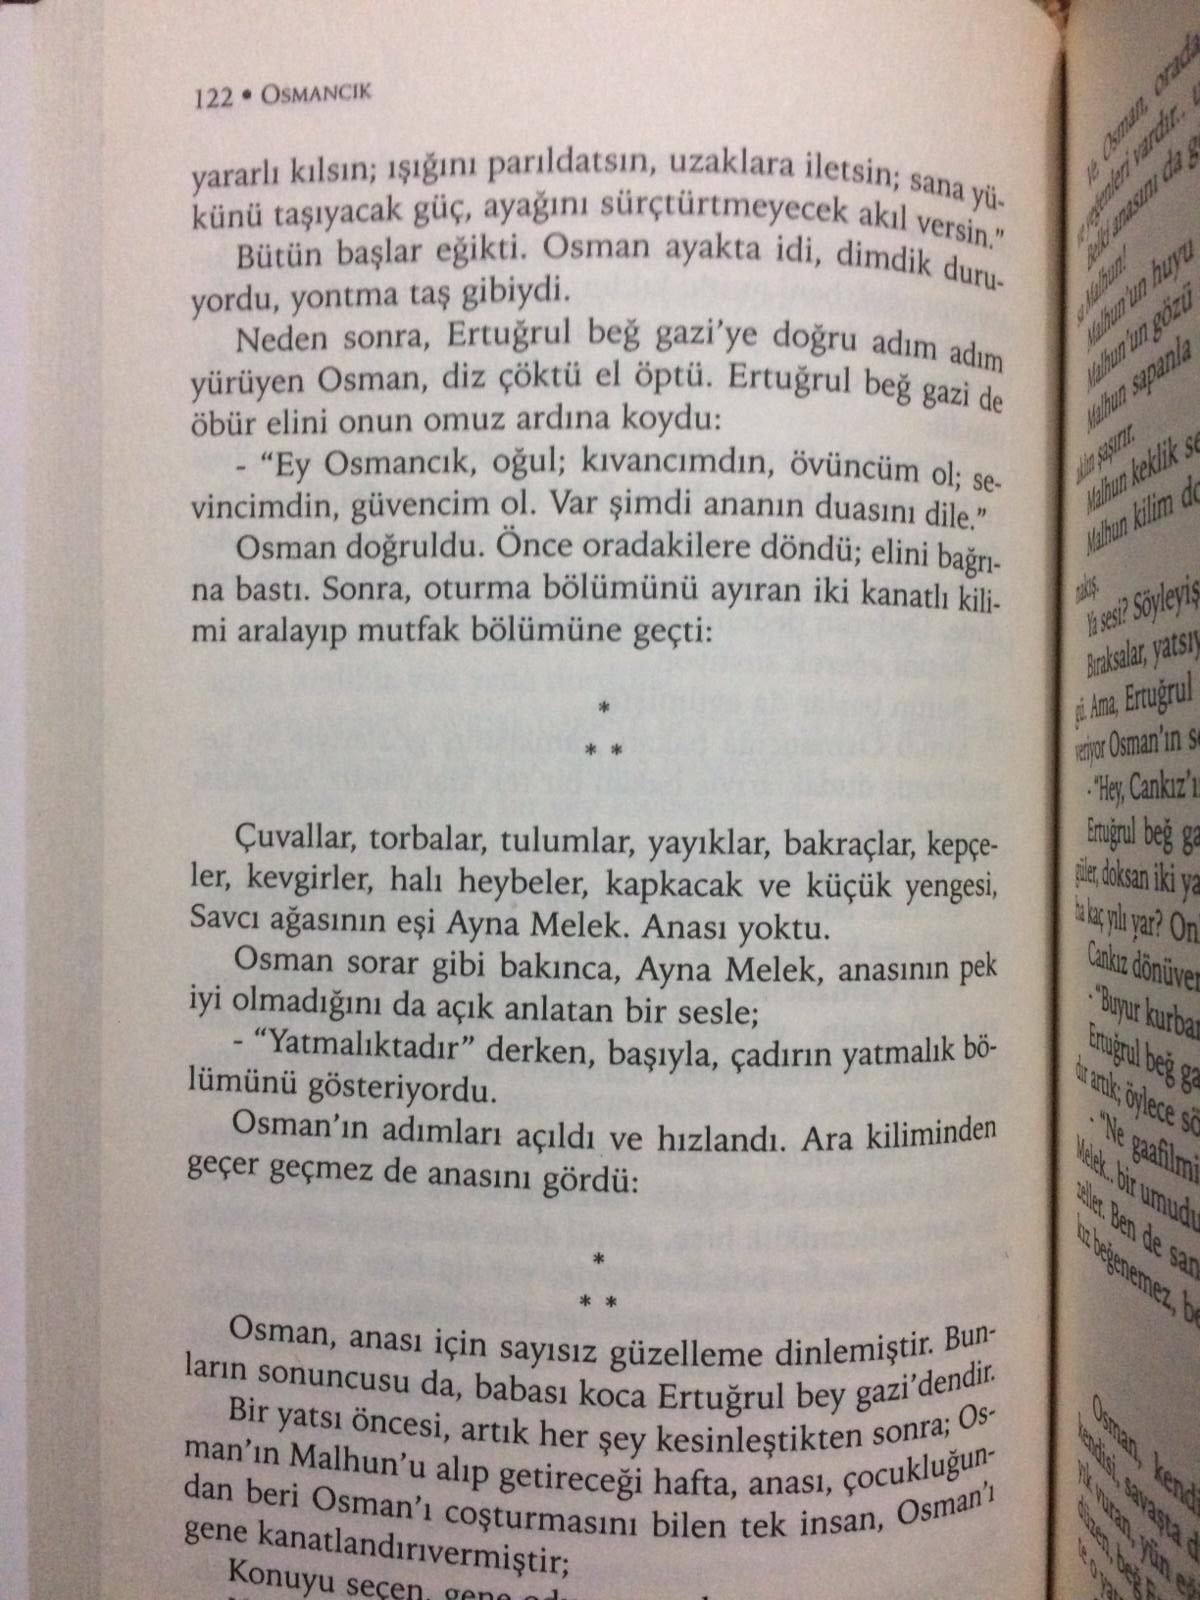 Tarık Buğra'nın Osmancık adlı romanında Şeyh Edebali'nin Osman Gazi'ye nasihatinin yer aldığı sayfa